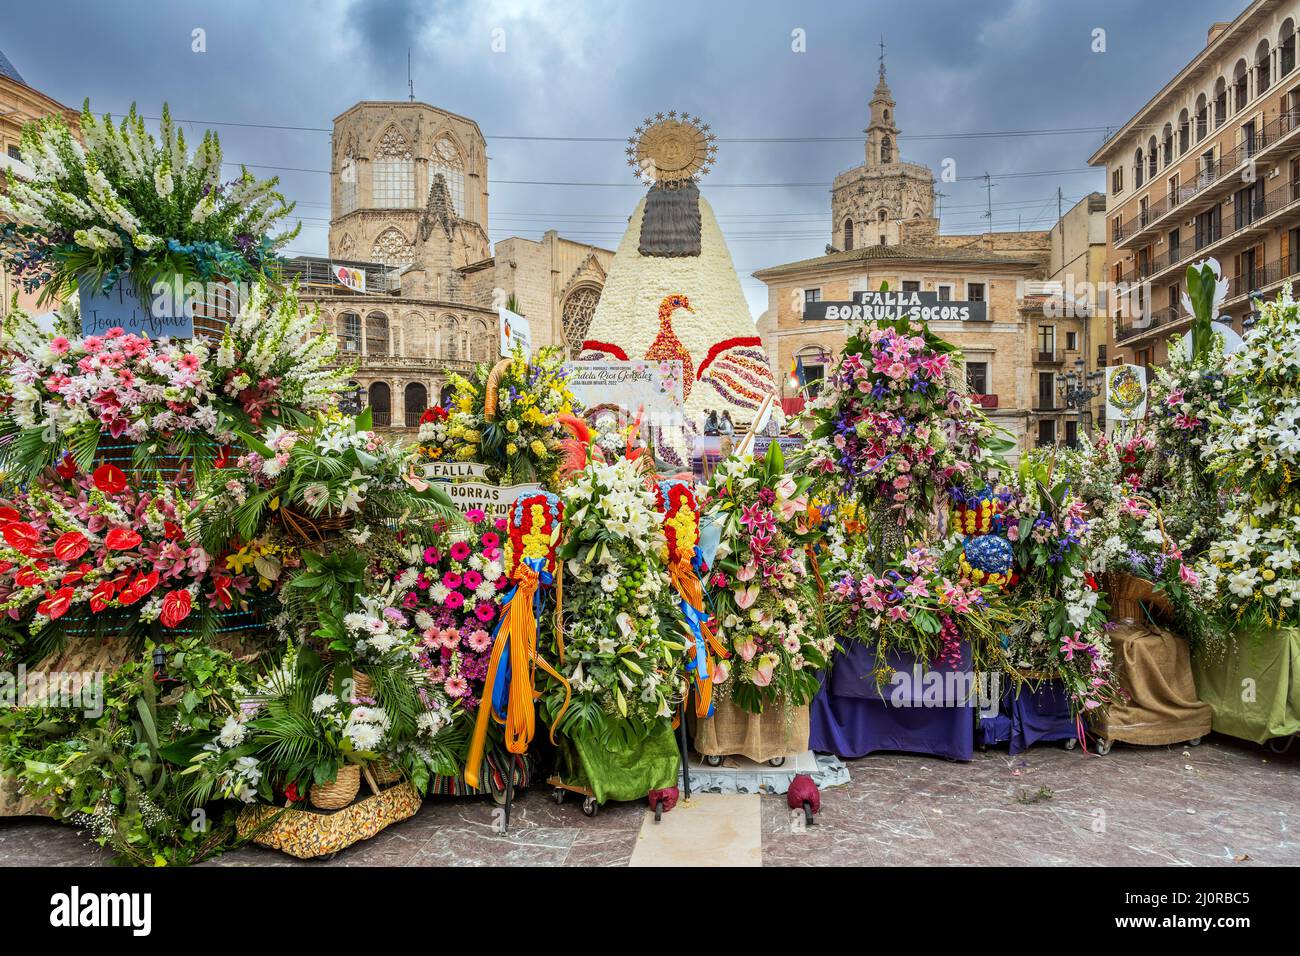 Die Zeremonie zur Blumengabe (ofrena de flors oder ofrenda de flores) während des jährlichen Fallas Festivals, Valencia, Spanien Stockfoto